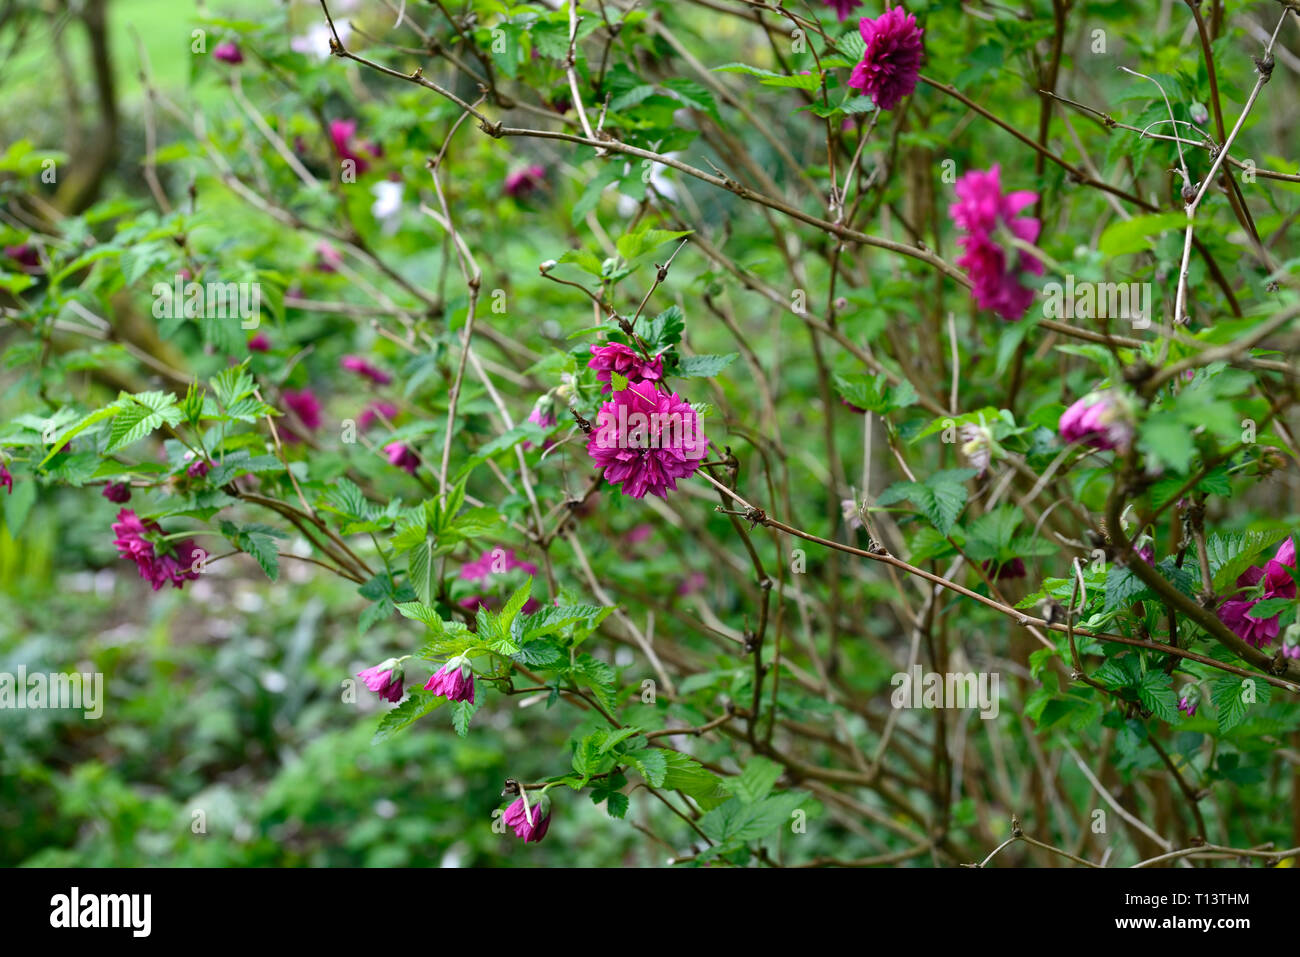 Rubus spectabilis flore pleno,double olympique,ronce remarquable, violet-rose fleurs,fleurs,fleurs,arbustes,formation,fourrés arbustifs,printemps,fleurs,fleurs,,bleu ... Banque D'Images